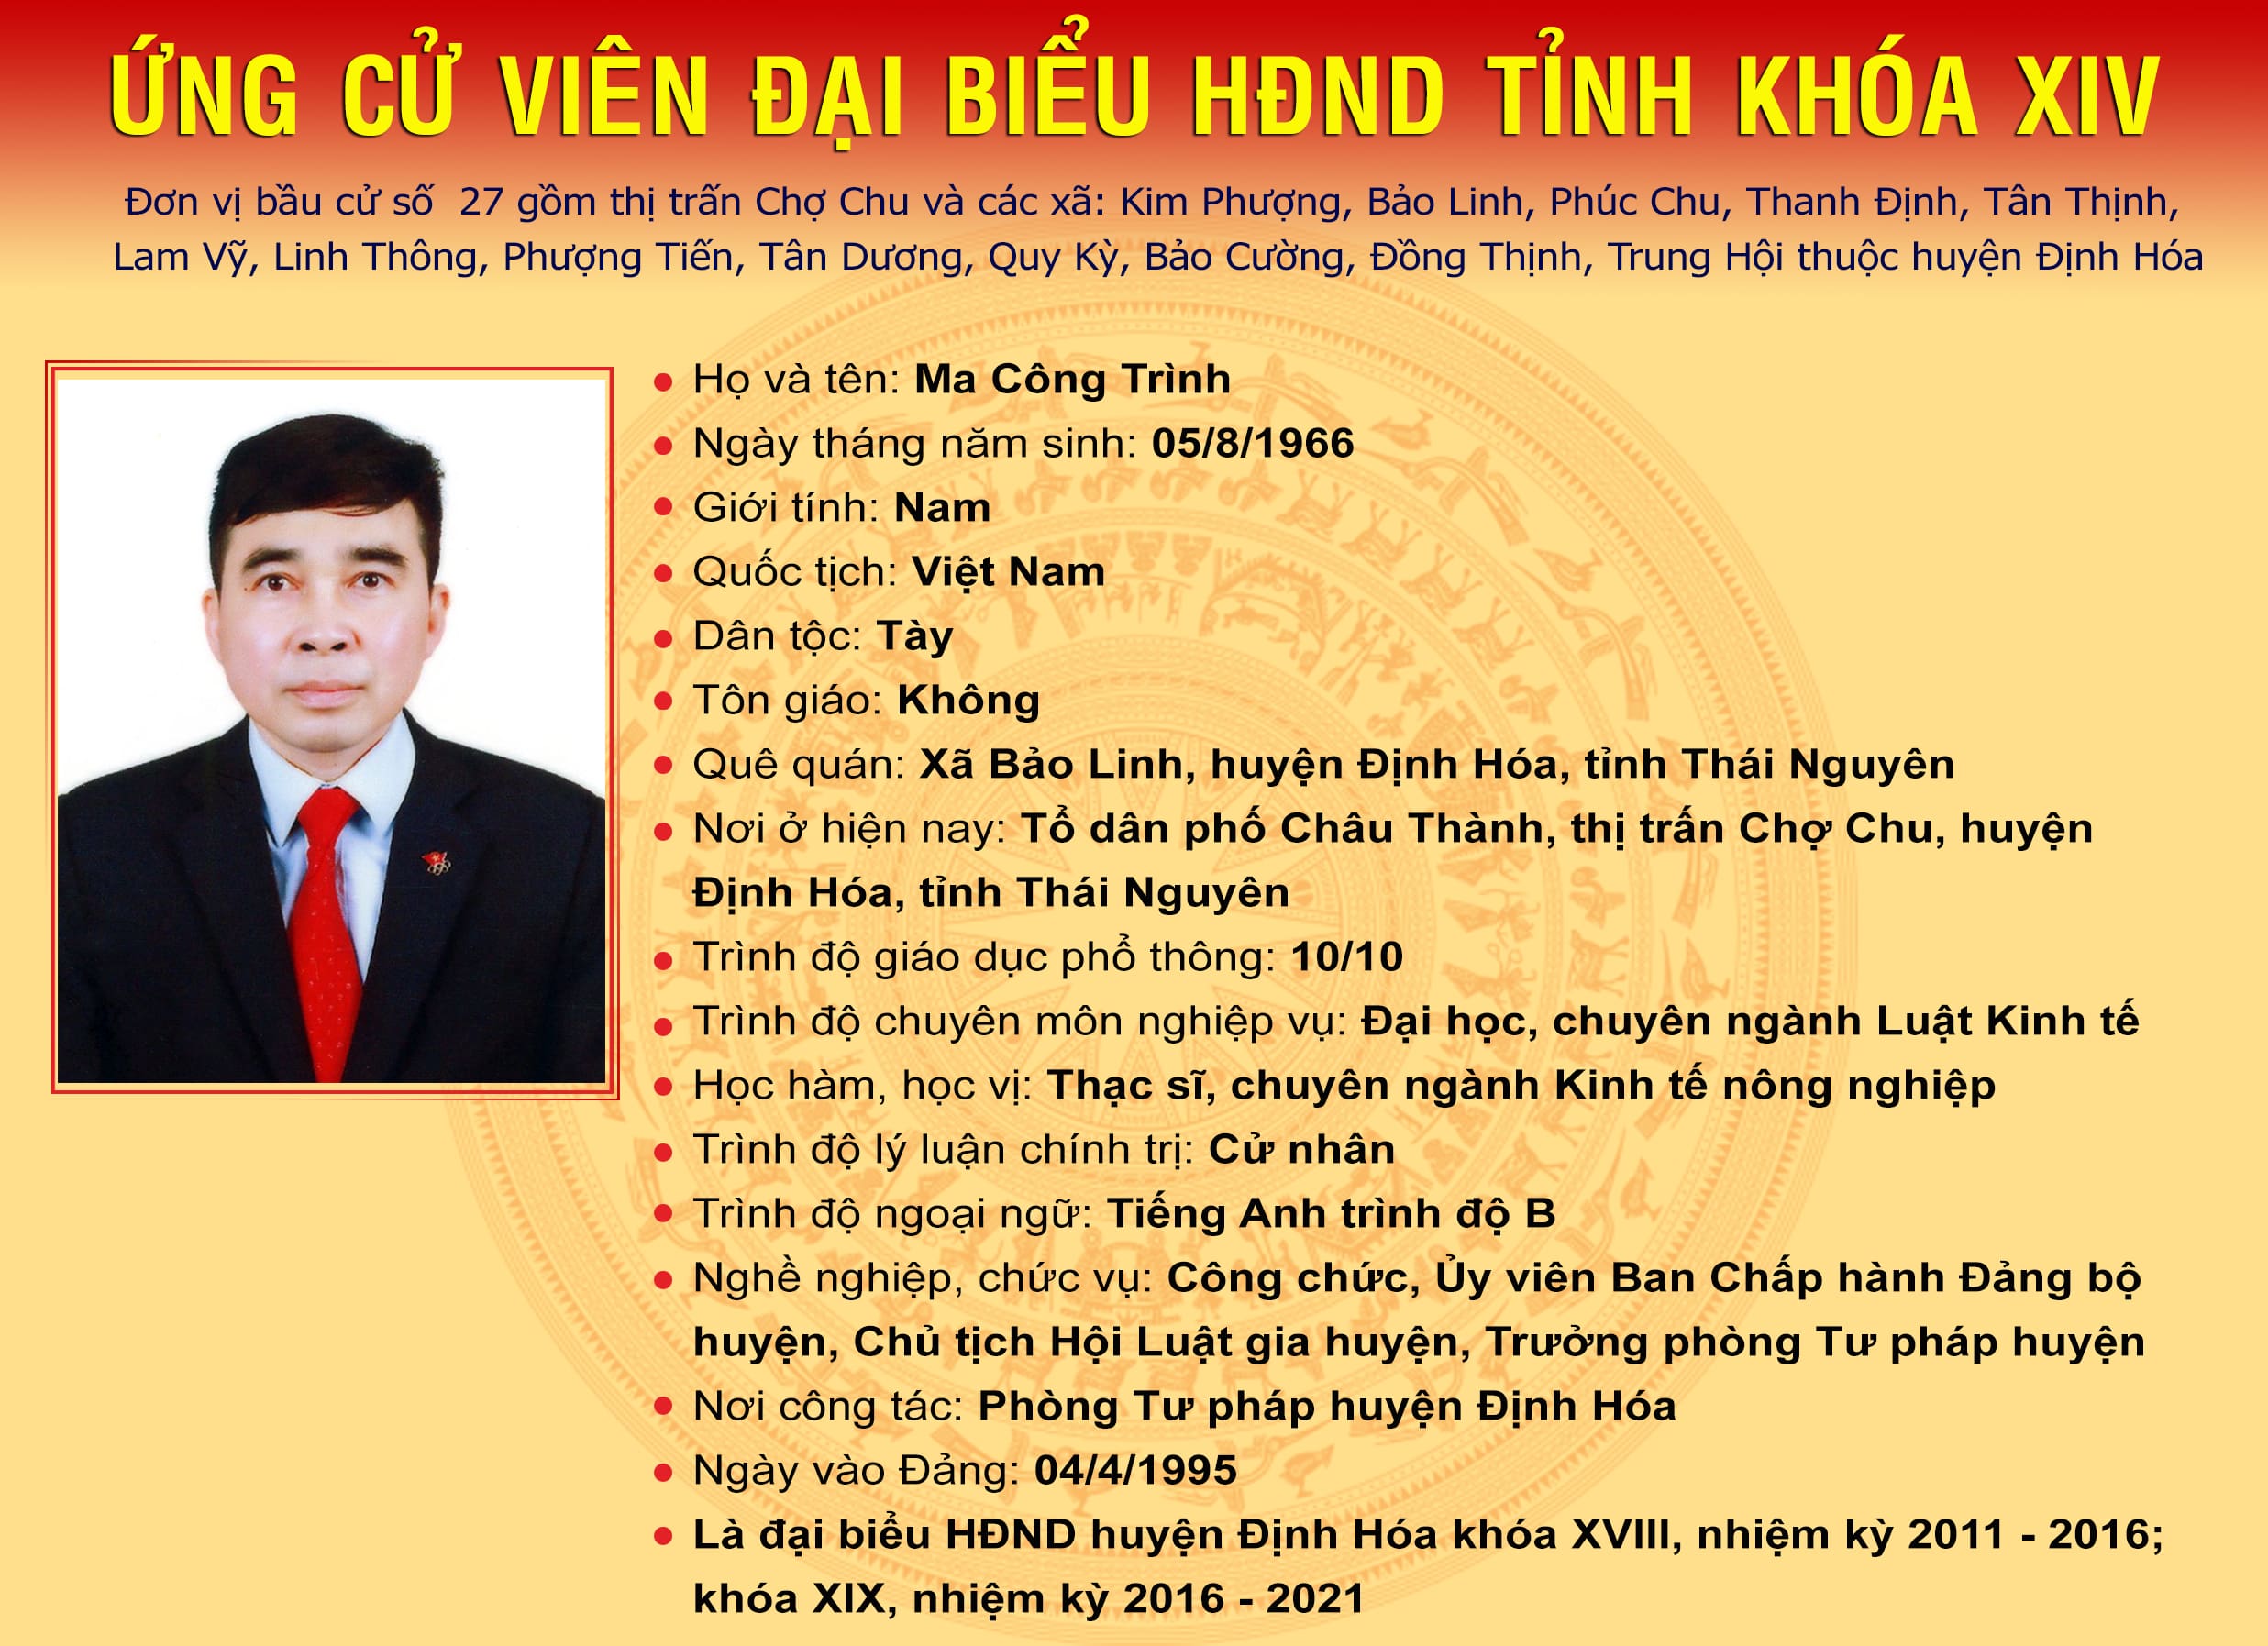 Các ứng cử viên đại biểu HĐND tỉnh Thái Nguyên khóa XIV, nhiệm kỳ 2021 - 2026 tại Đơn vị bầu cử số 27: Huyện Định Hóa -0